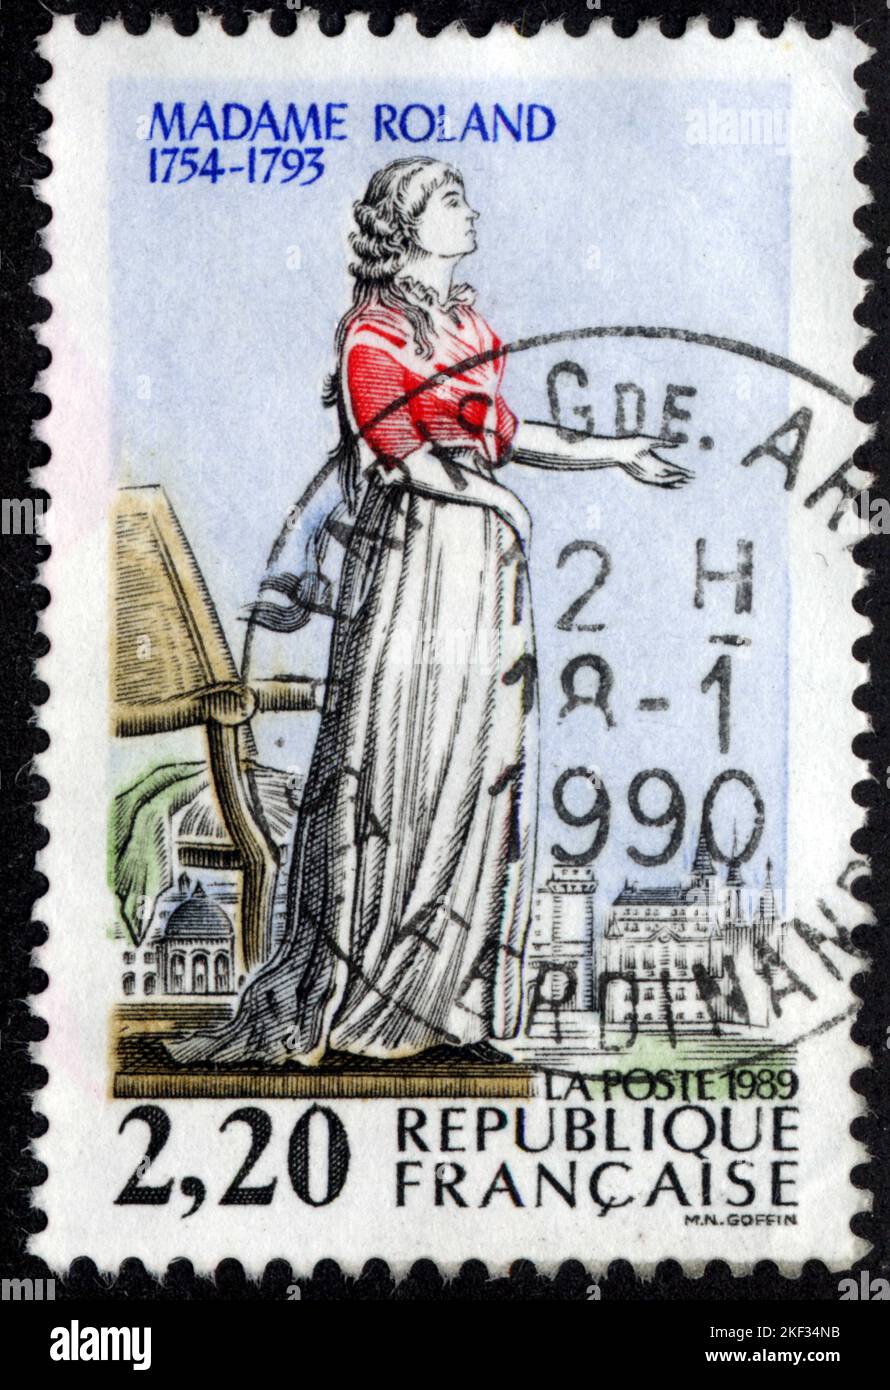 Timbre OBLITÉRÉ MADAME ROLAND. 1754-1793. LA POSTE. 1989. RÉPUBLIQUE FRANÇAISE. 2,20 Banque D'Images